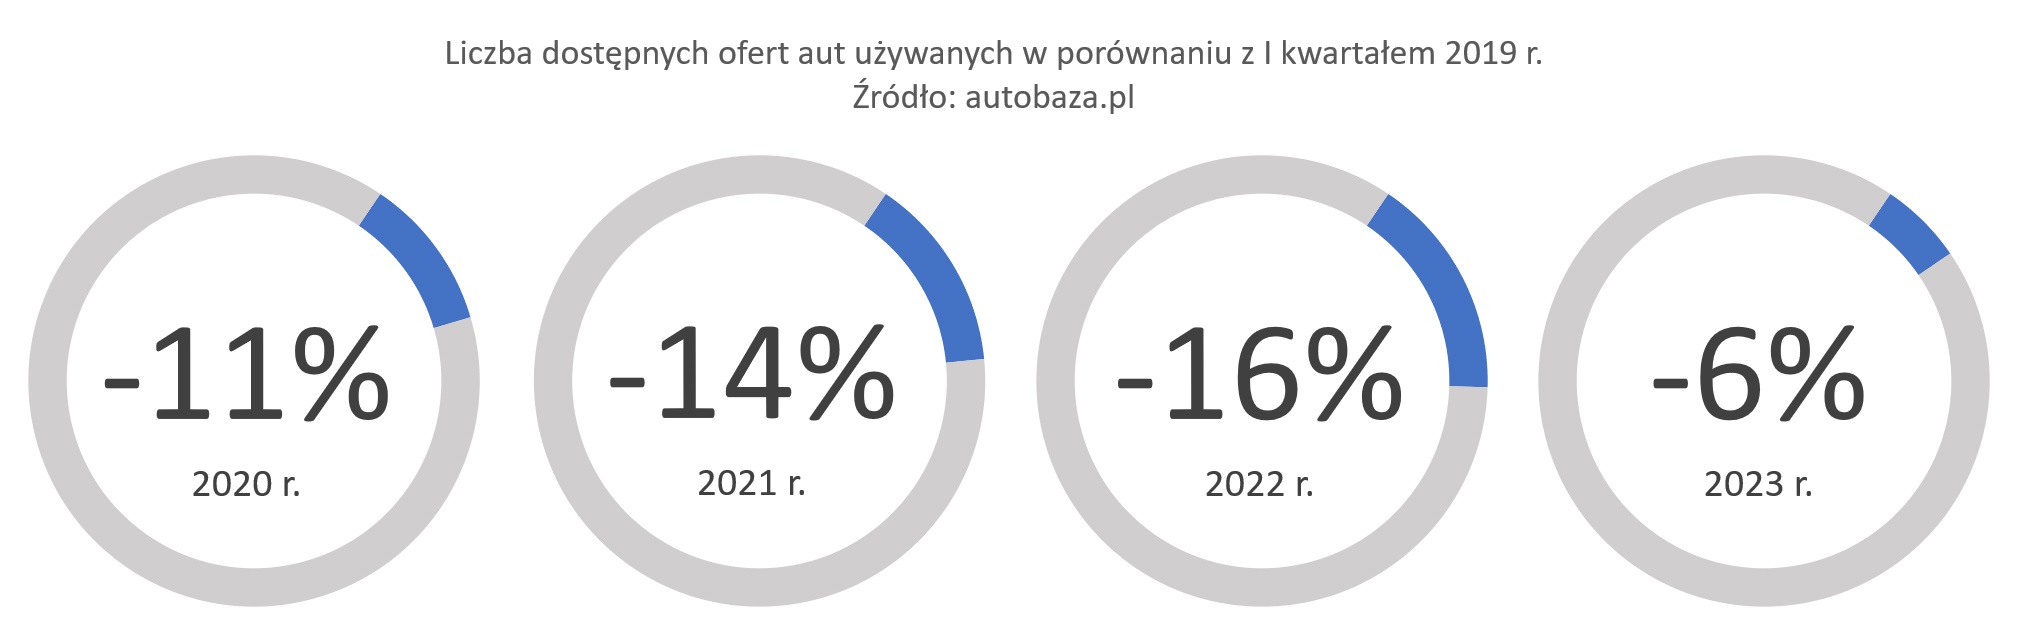 autobaza.pl - Liczba dostępnych ofert aut używanych w porównaniu z I kwartałem 2019 r.